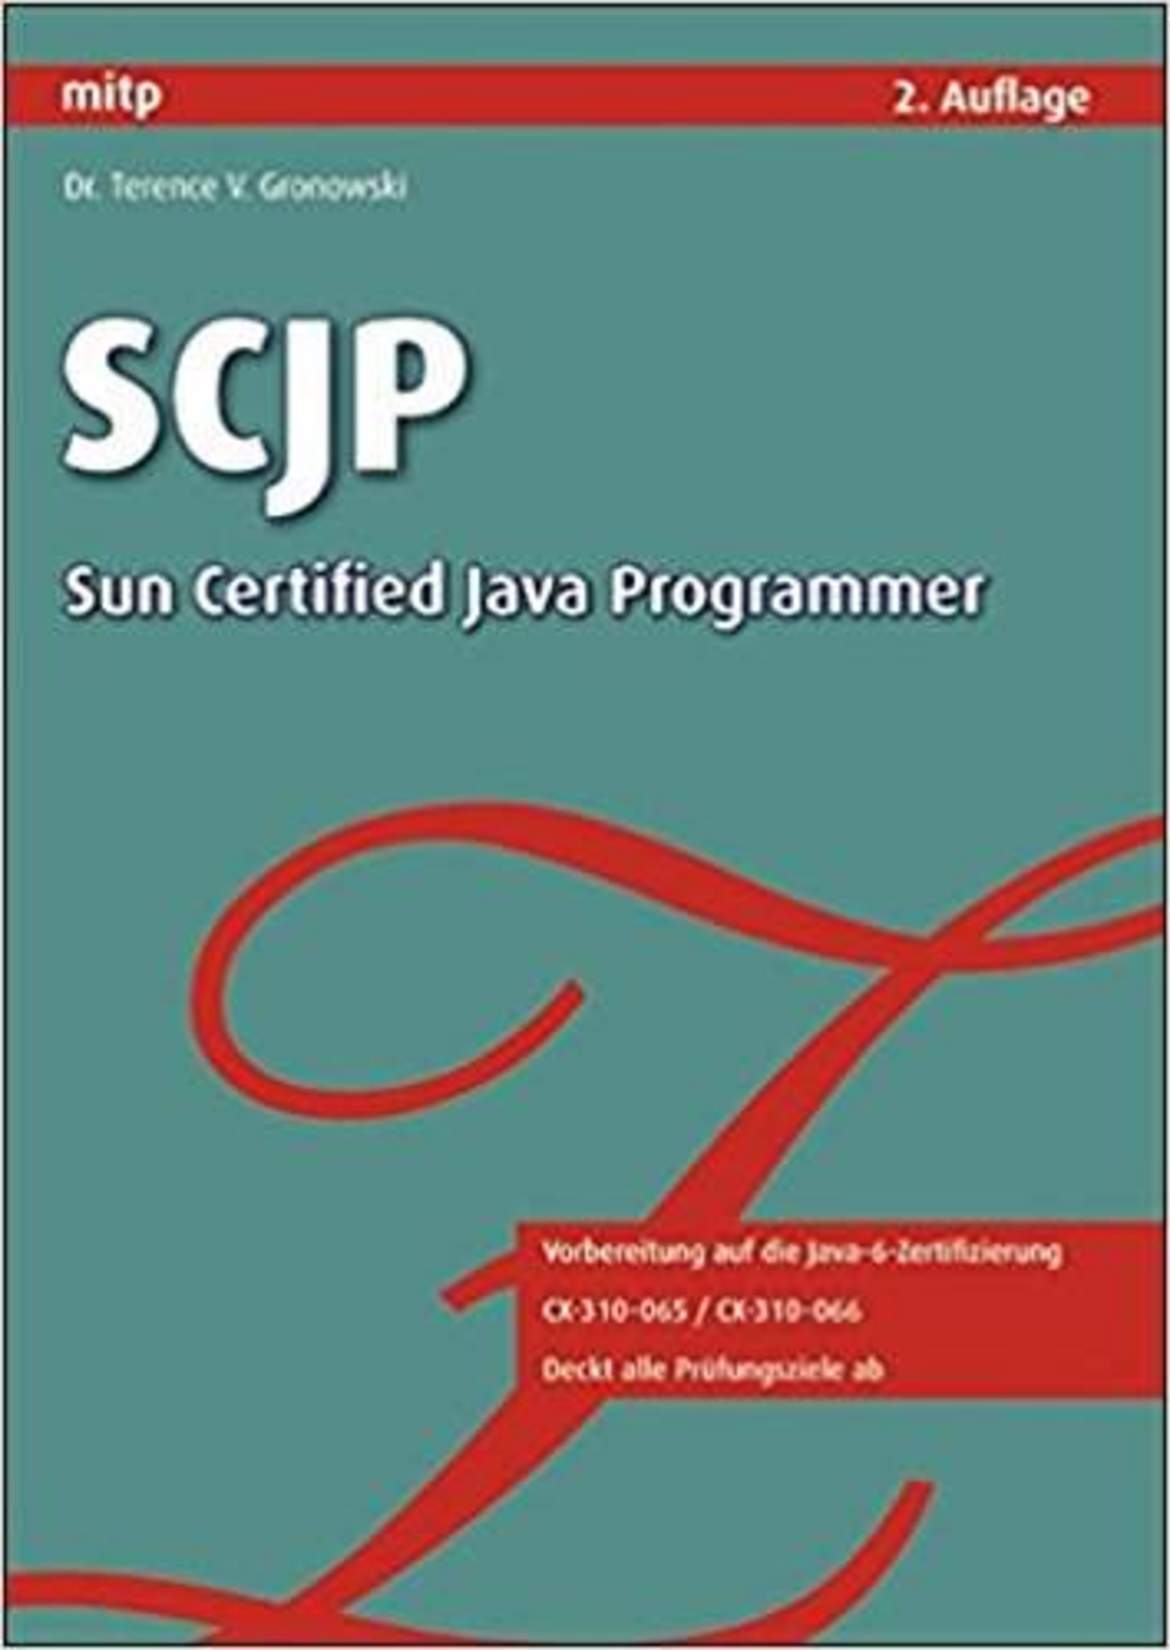 SCJP - Sun Certified Java Programmer / Vorbereitung auf die Java 6 Zertifizierung: CX-310-065 / CX-310-066